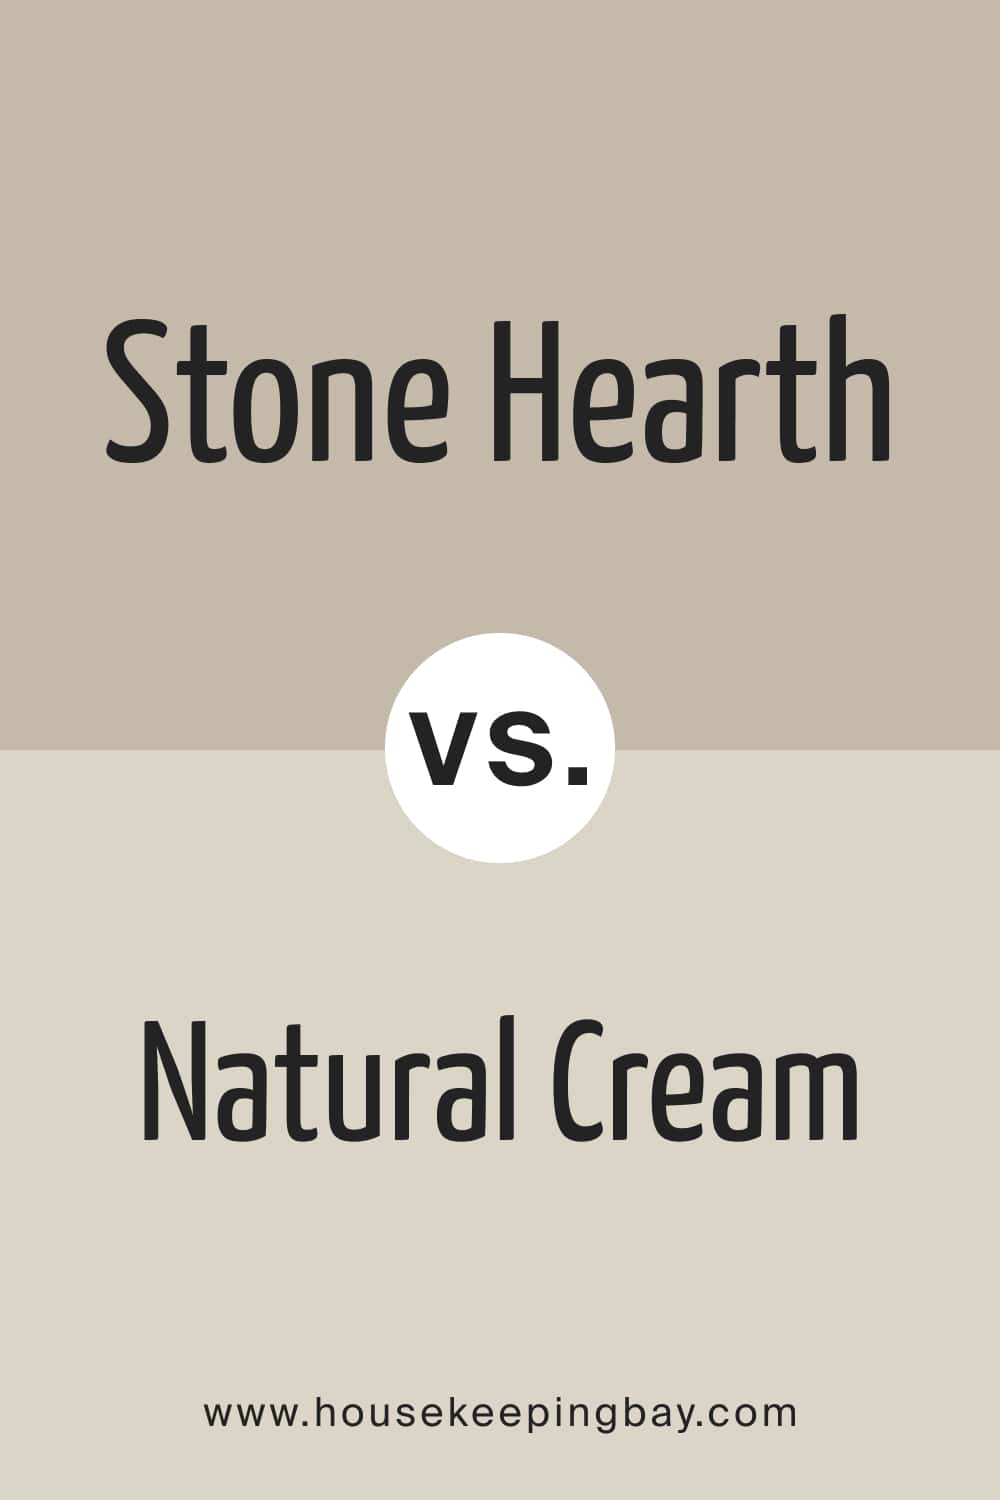 Stone Hearth vs Natural Cream